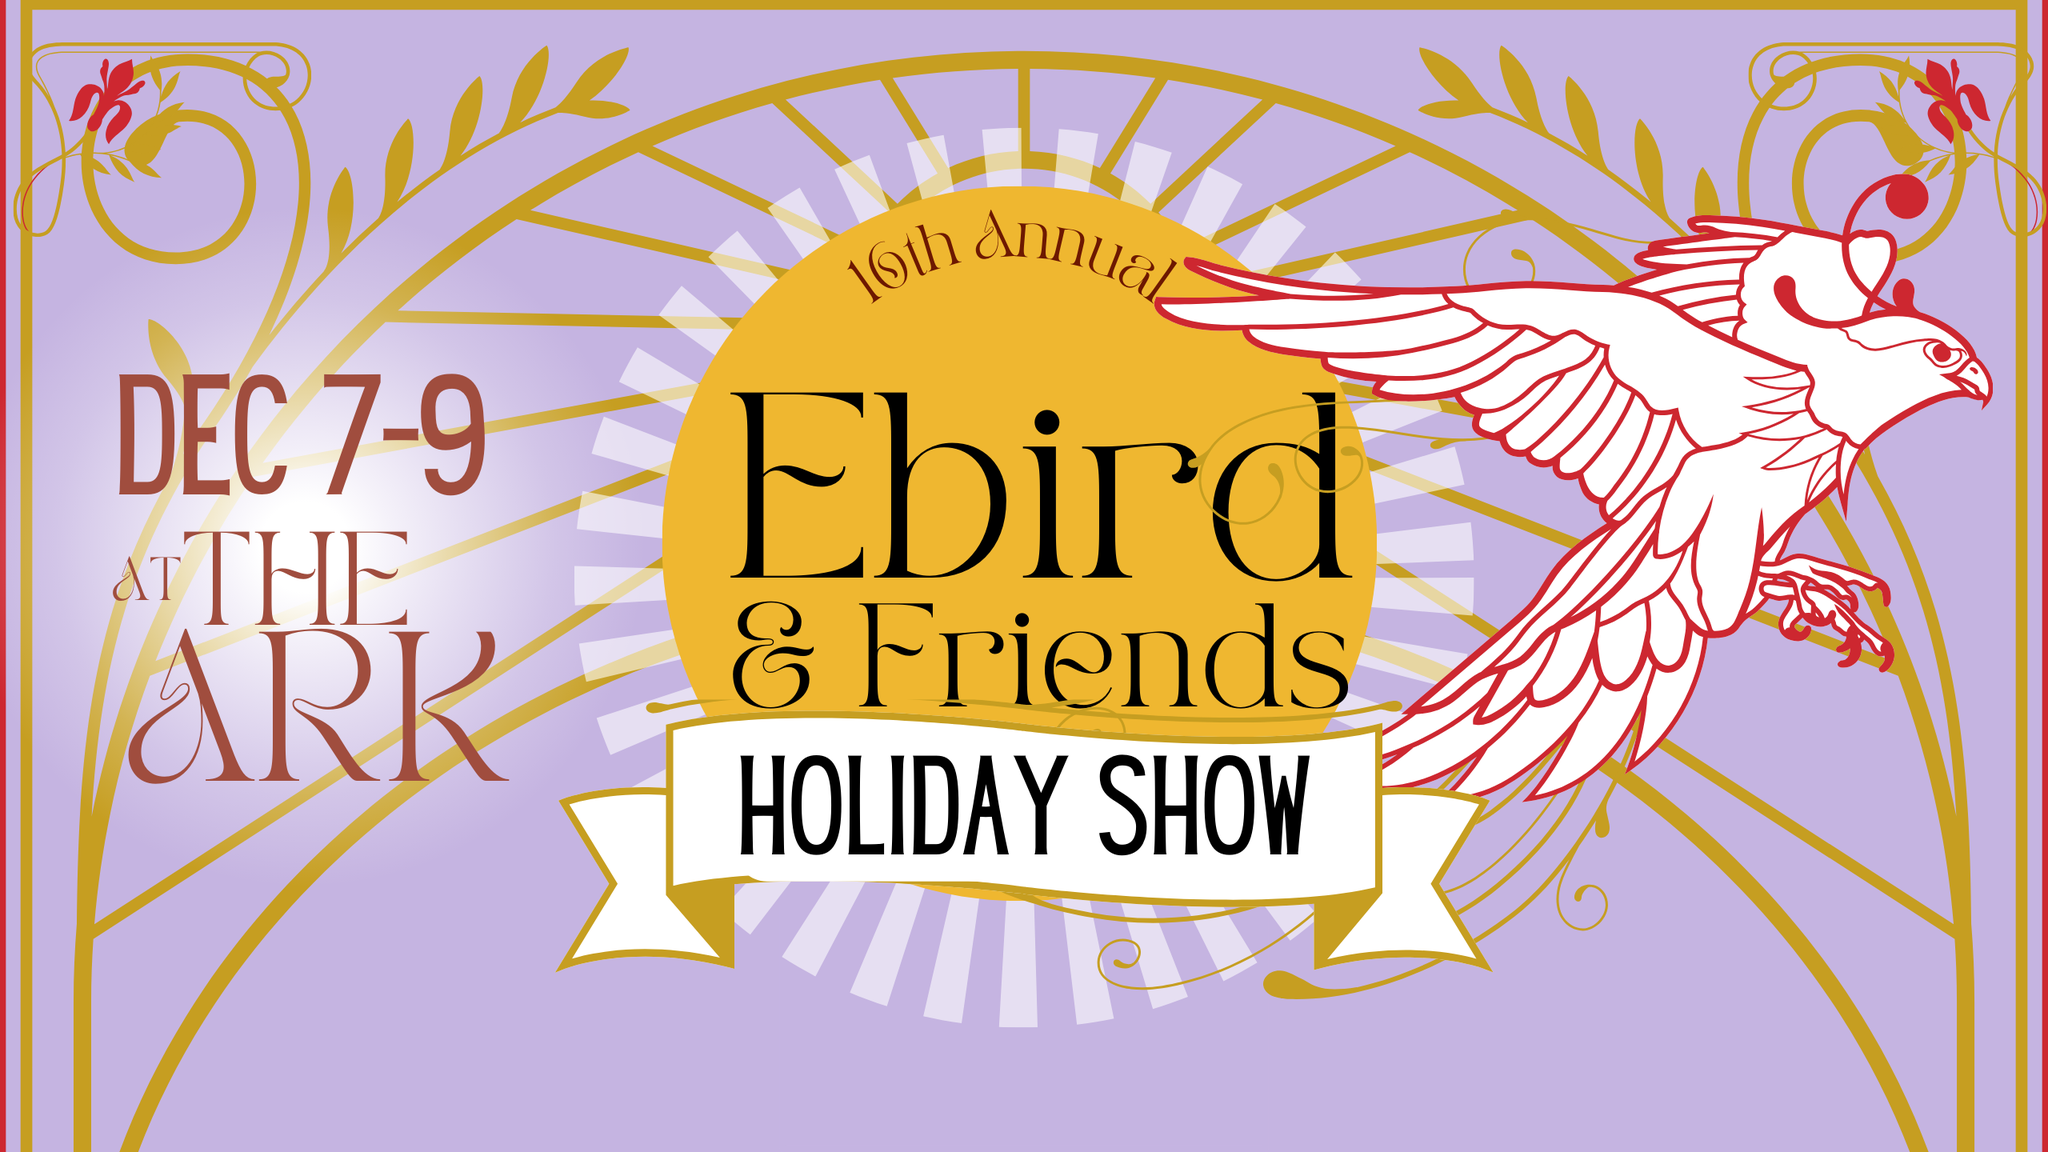 Ebird & Friends Holiday Show